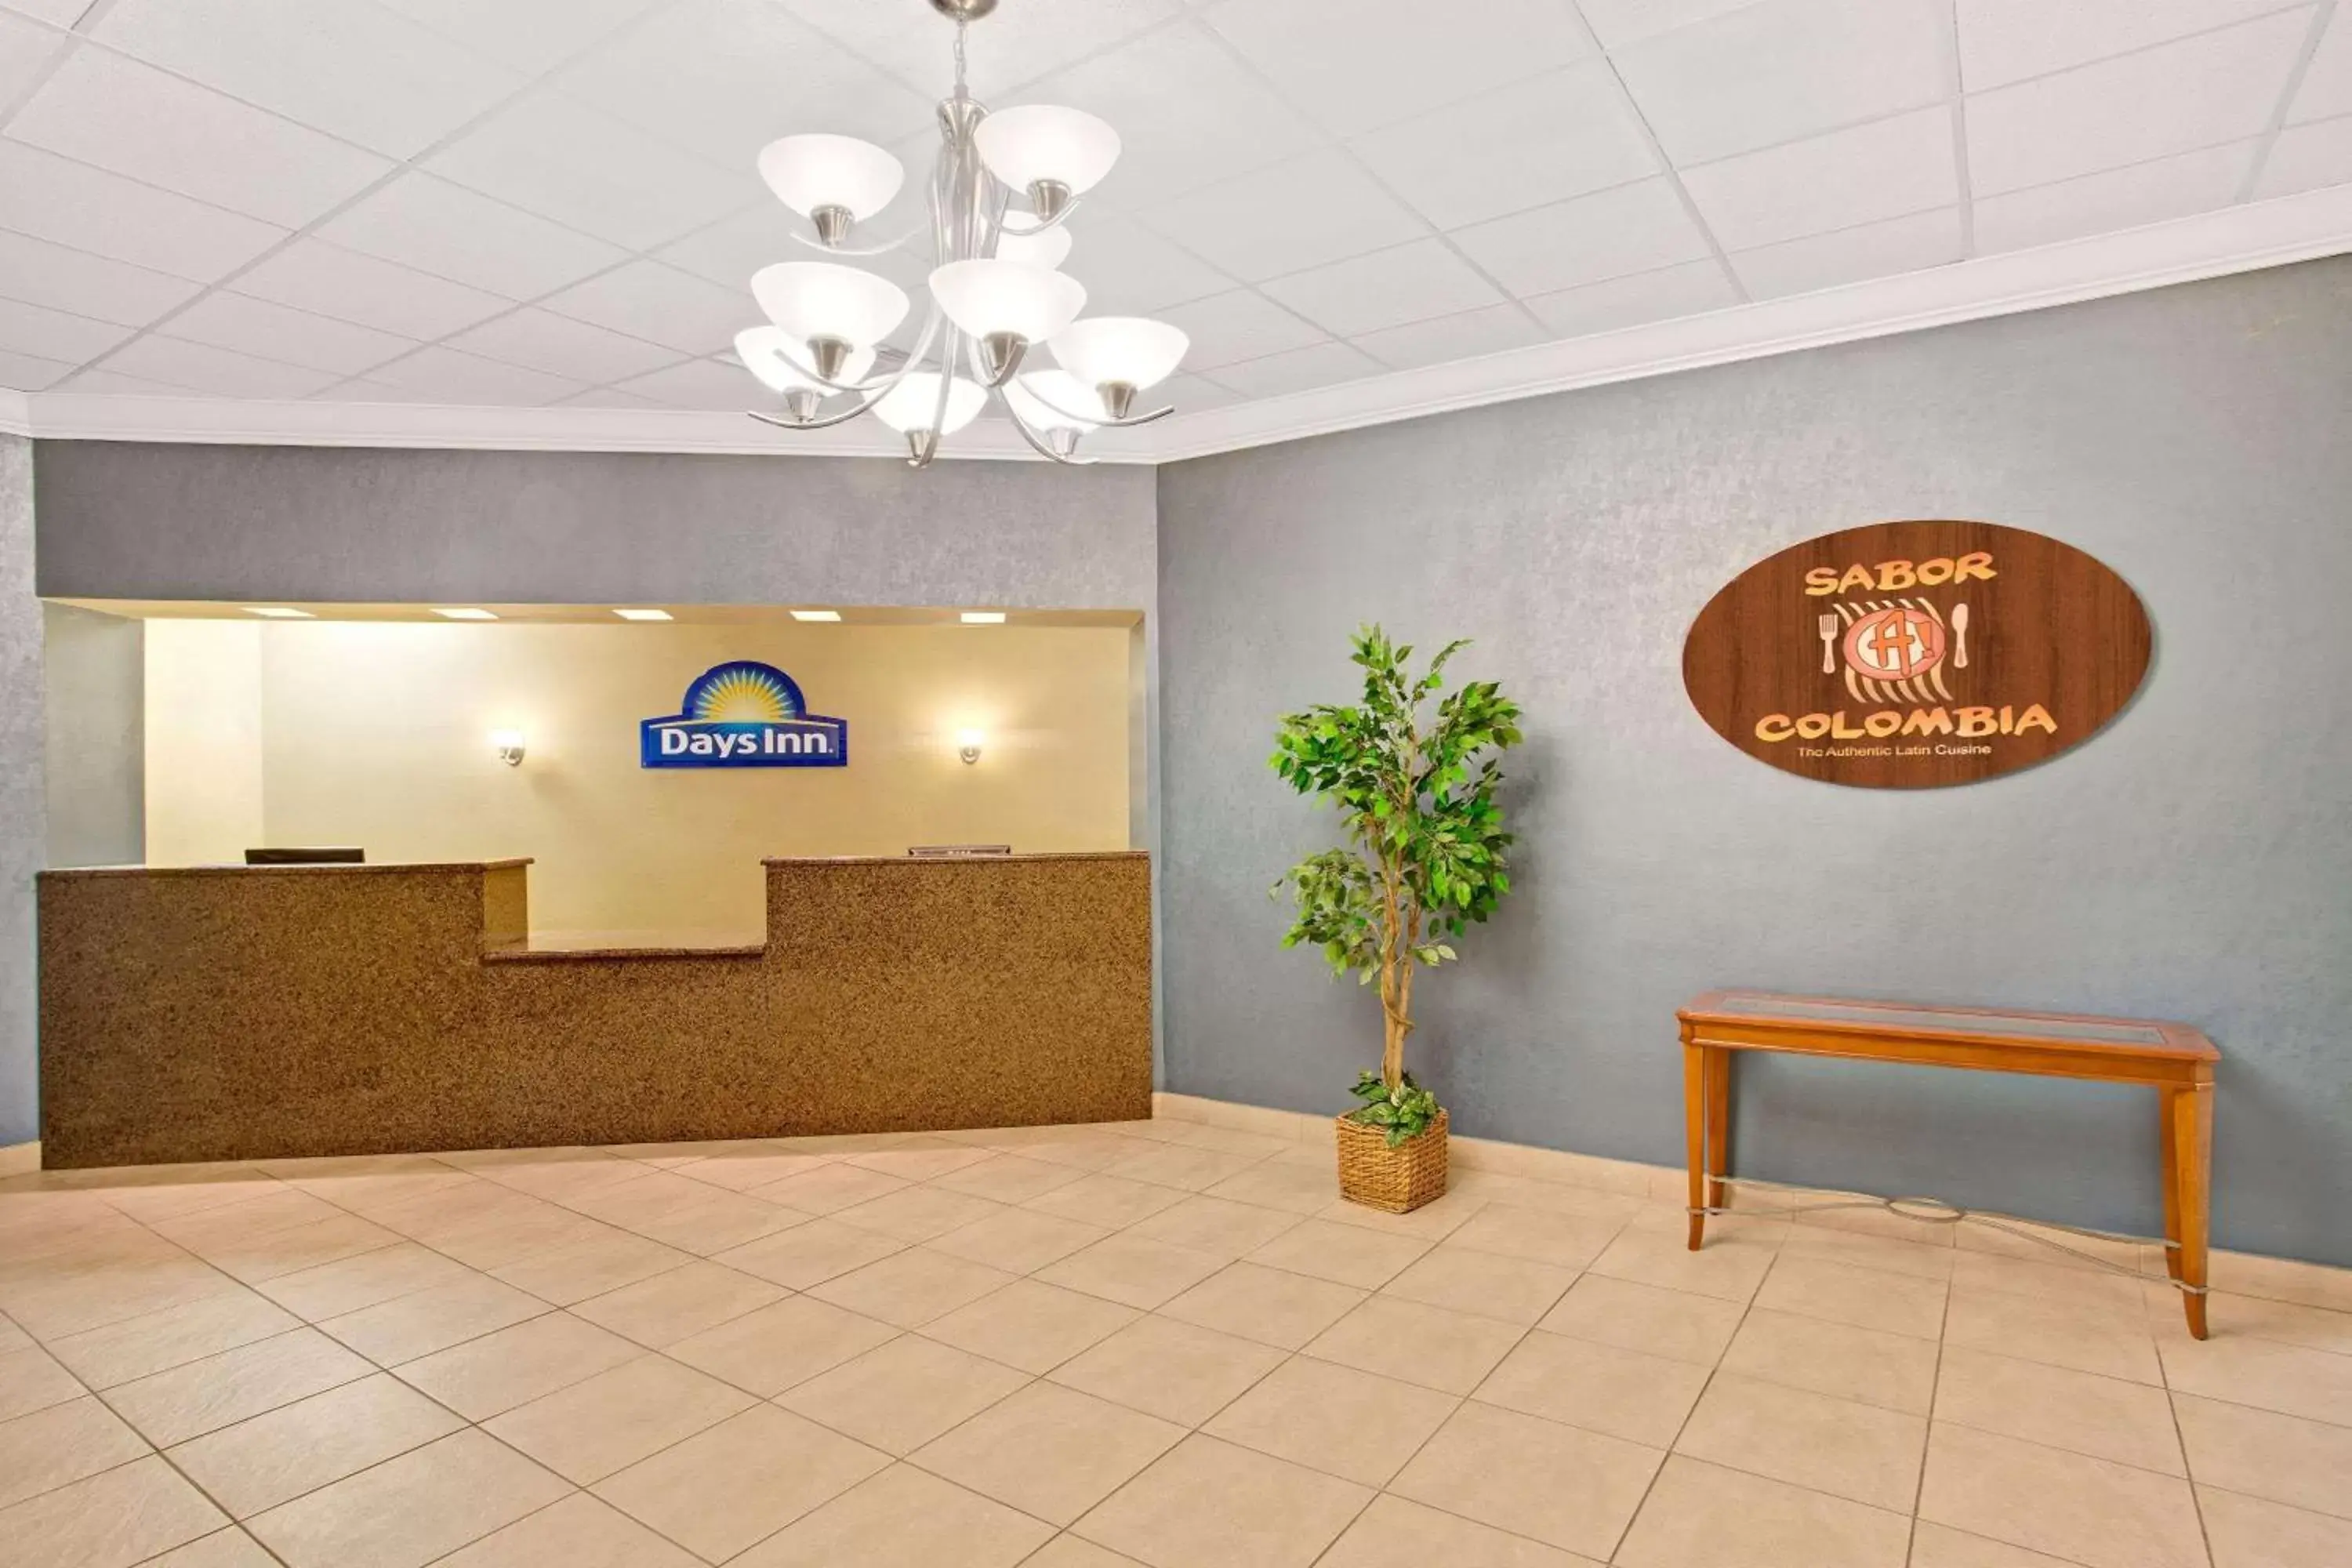 Lobby or reception, Lobby/Reception in Days Inn by Wyndham Orlando Airport Florida Mall